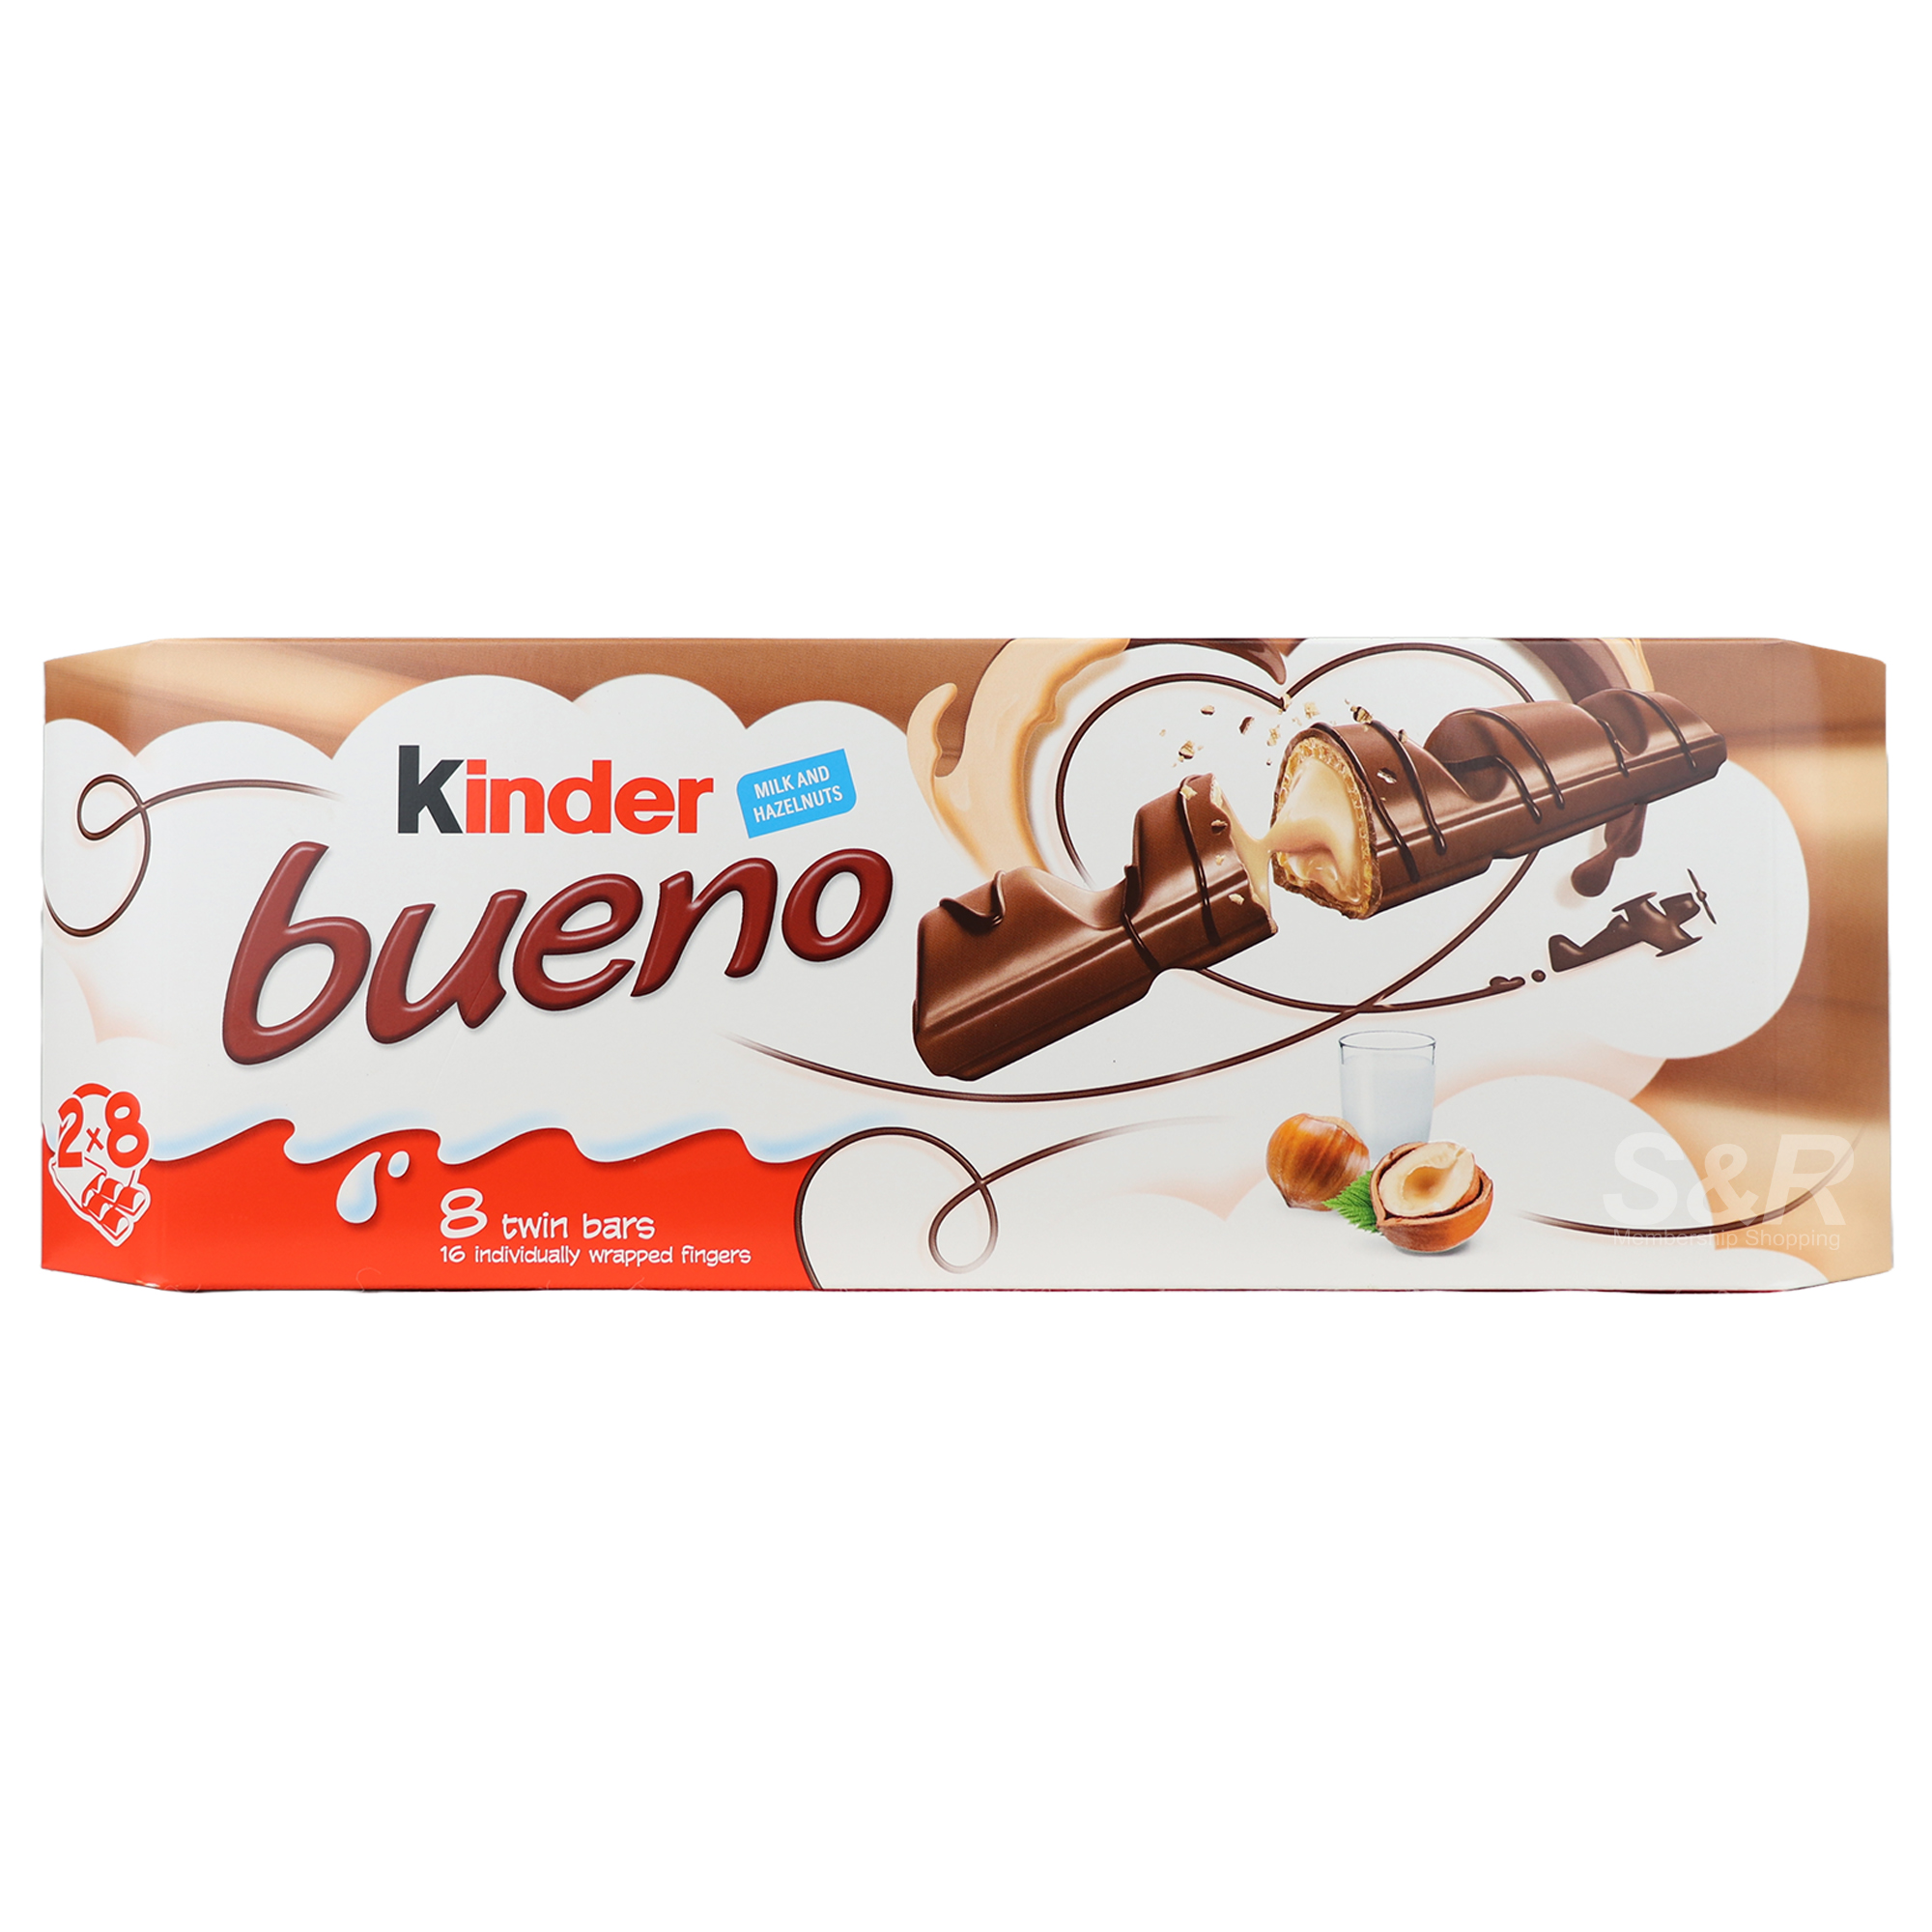 Kinder Bueno Milk and Hazelnuts 8 Twin Bars